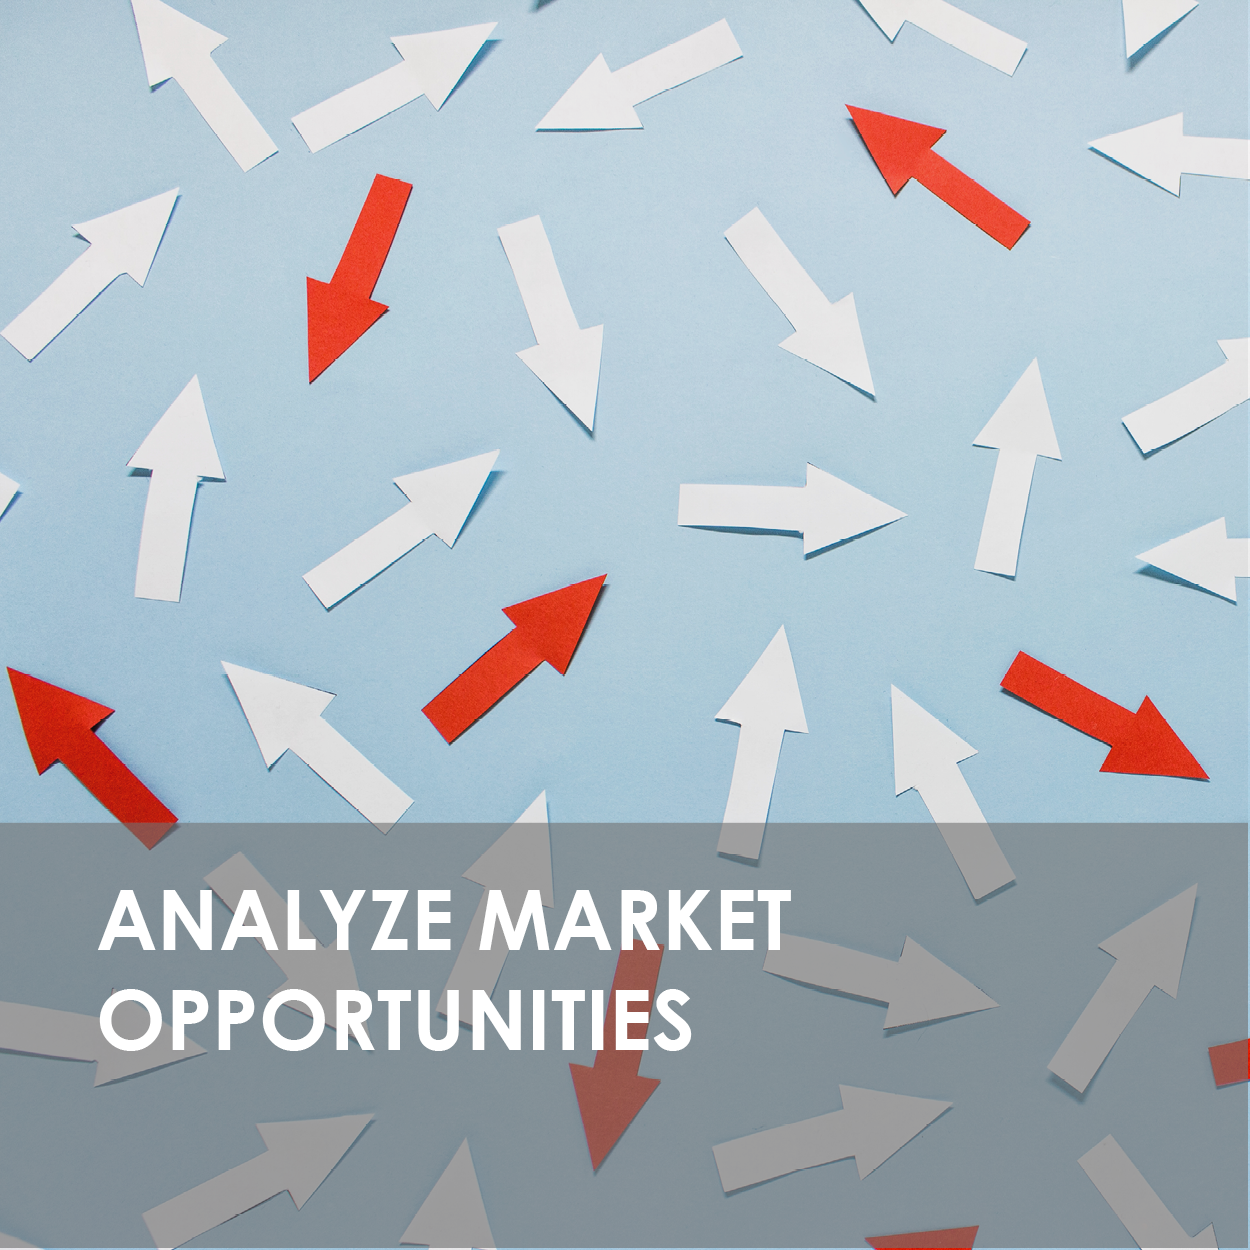 Market opportunities